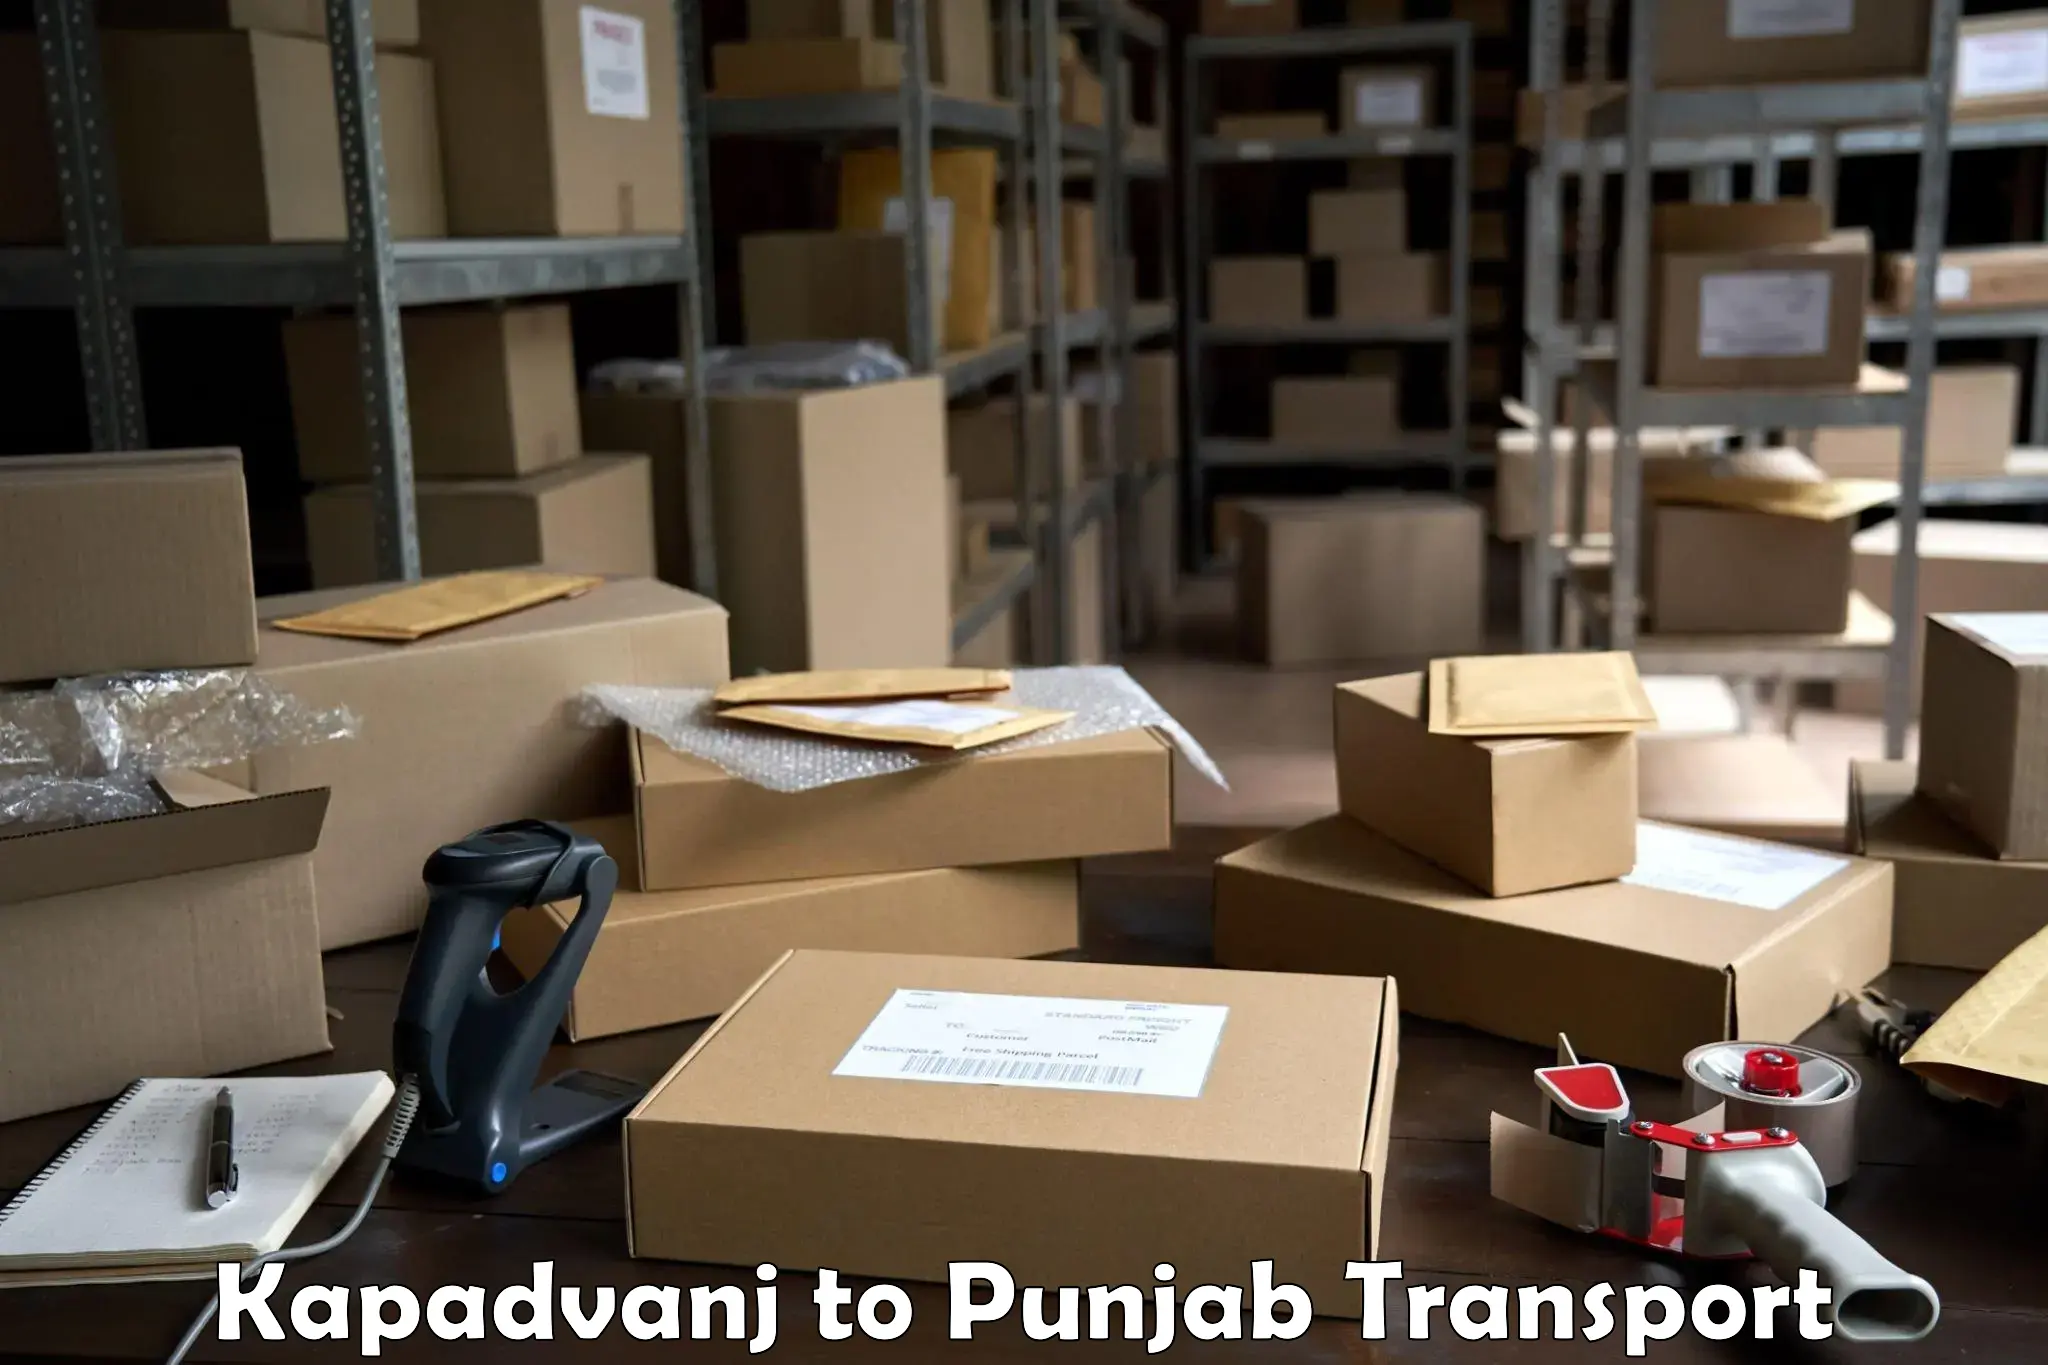 Nearest transport service Kapadvanj to Punjab